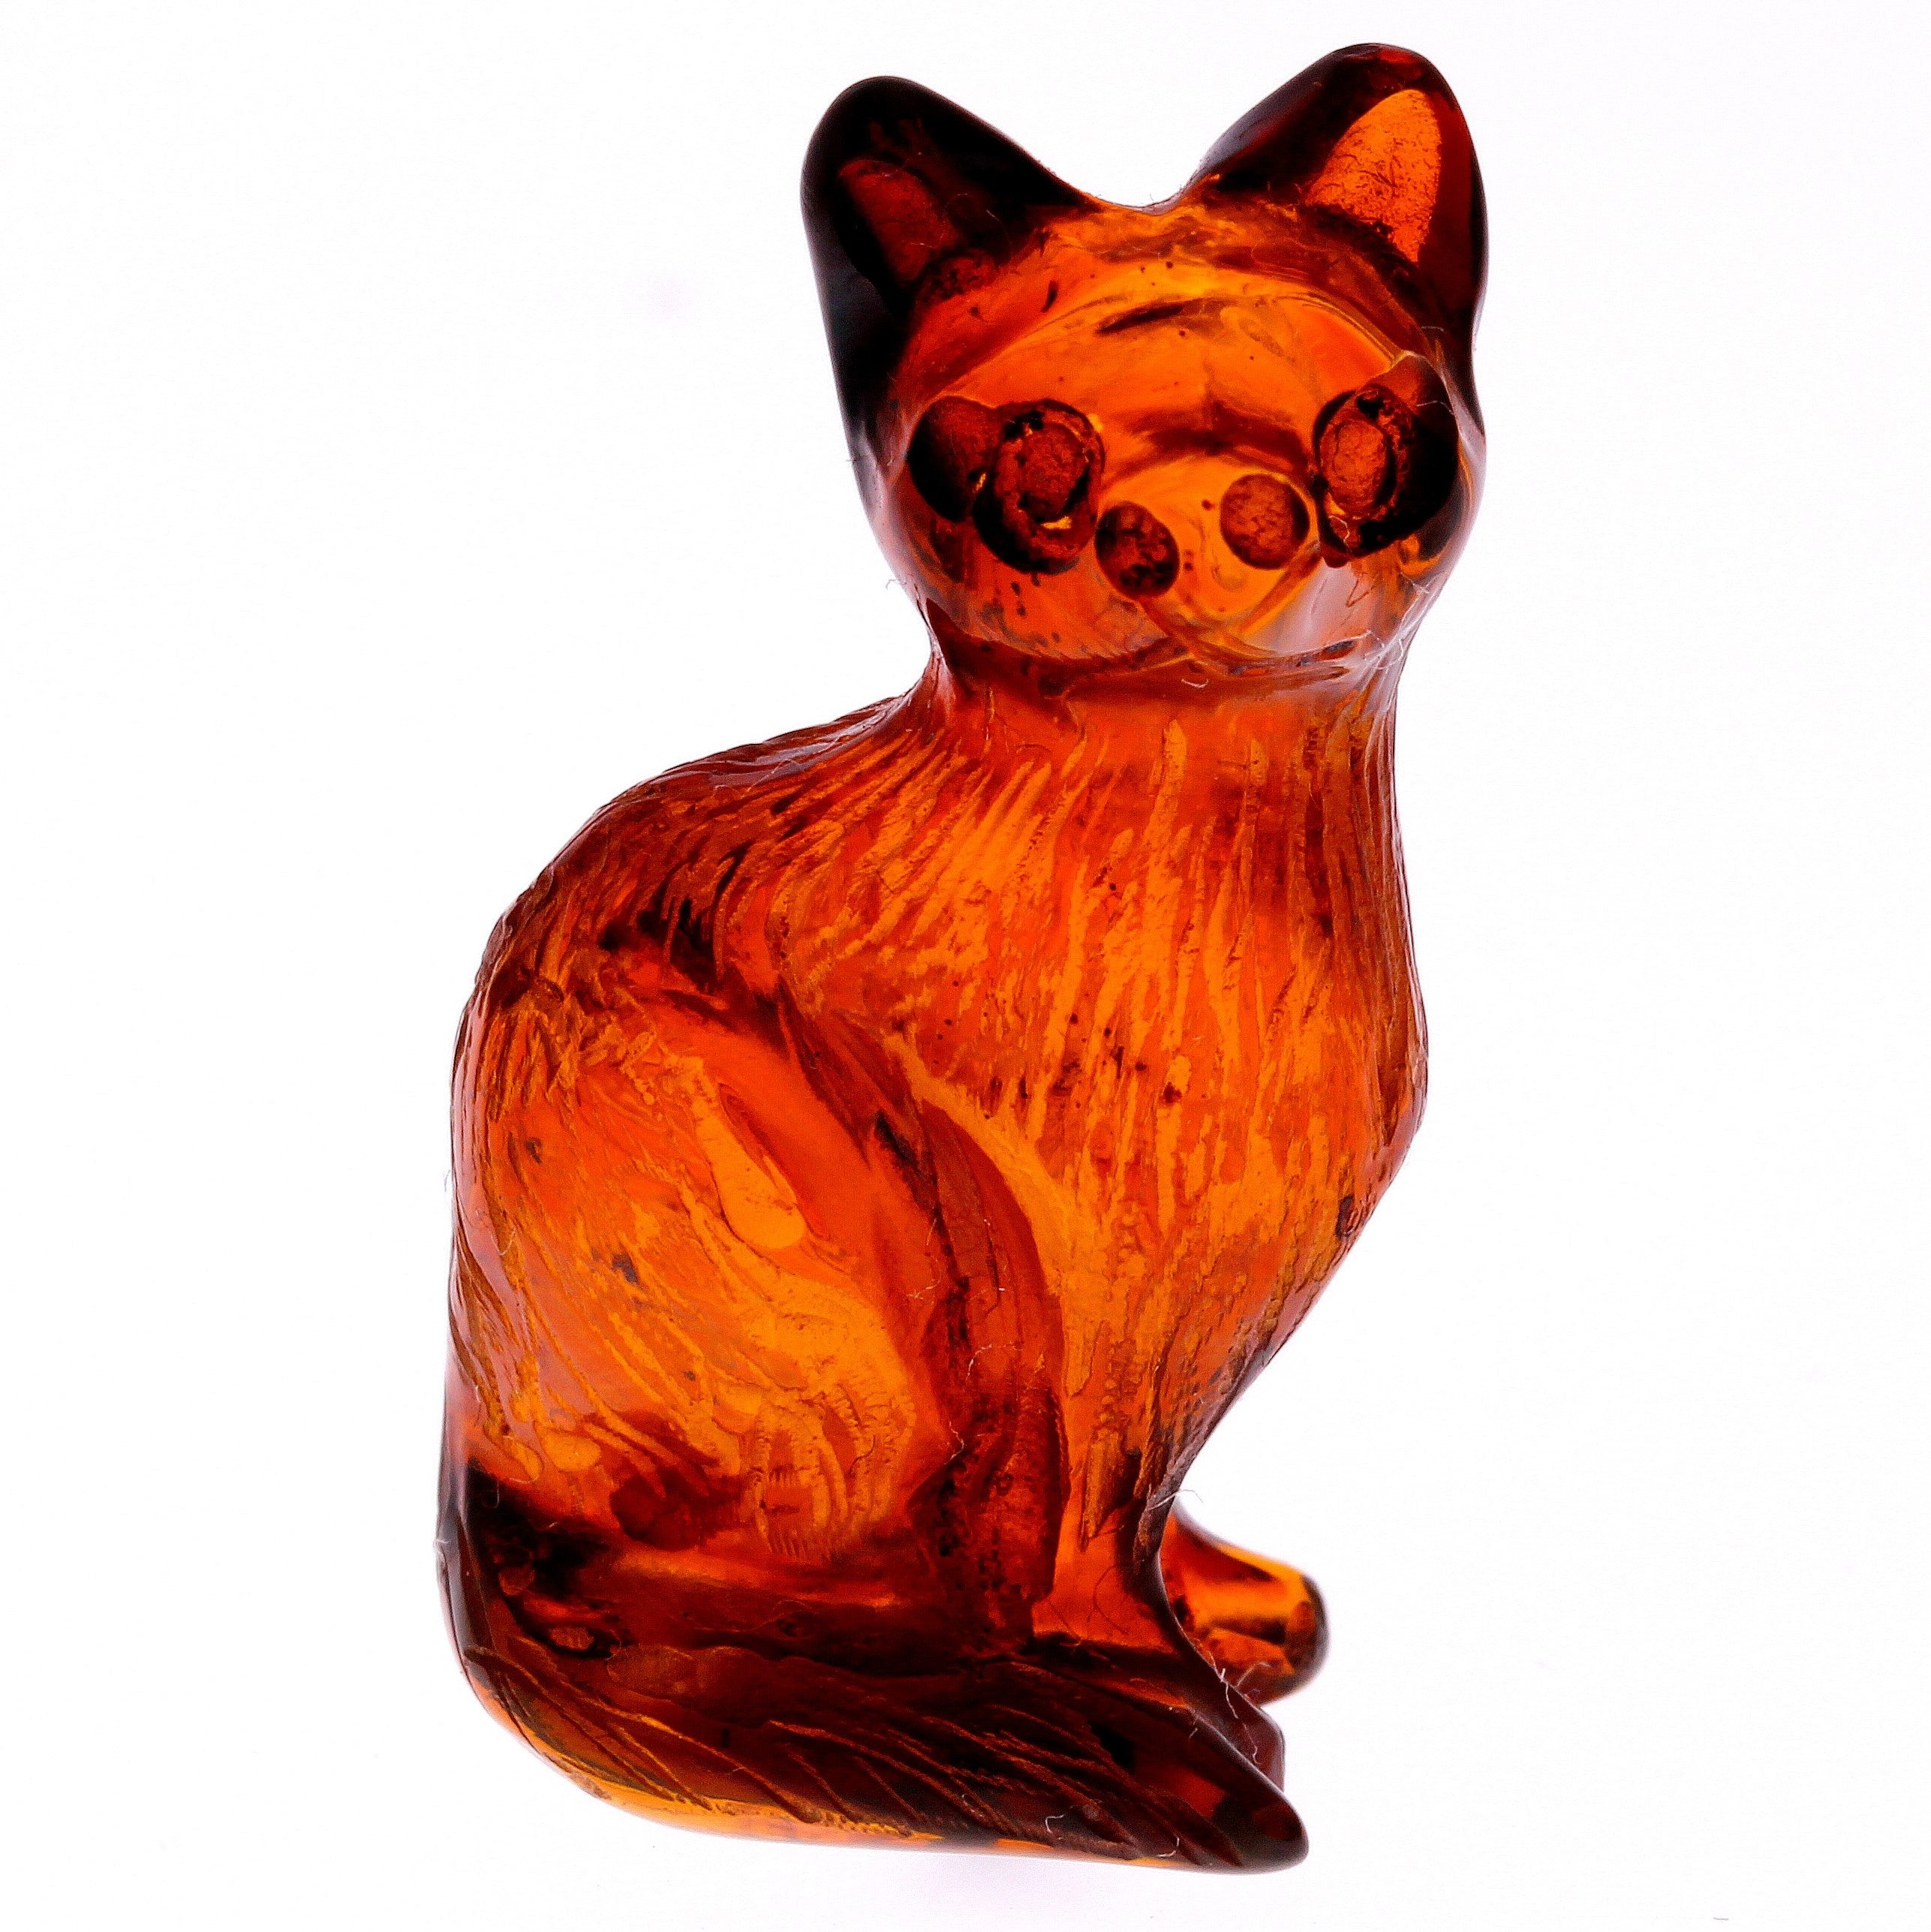 Figurine Superb Quality Handmade Natural Carved Cat made of Genuine Baltic Amber - CRV50